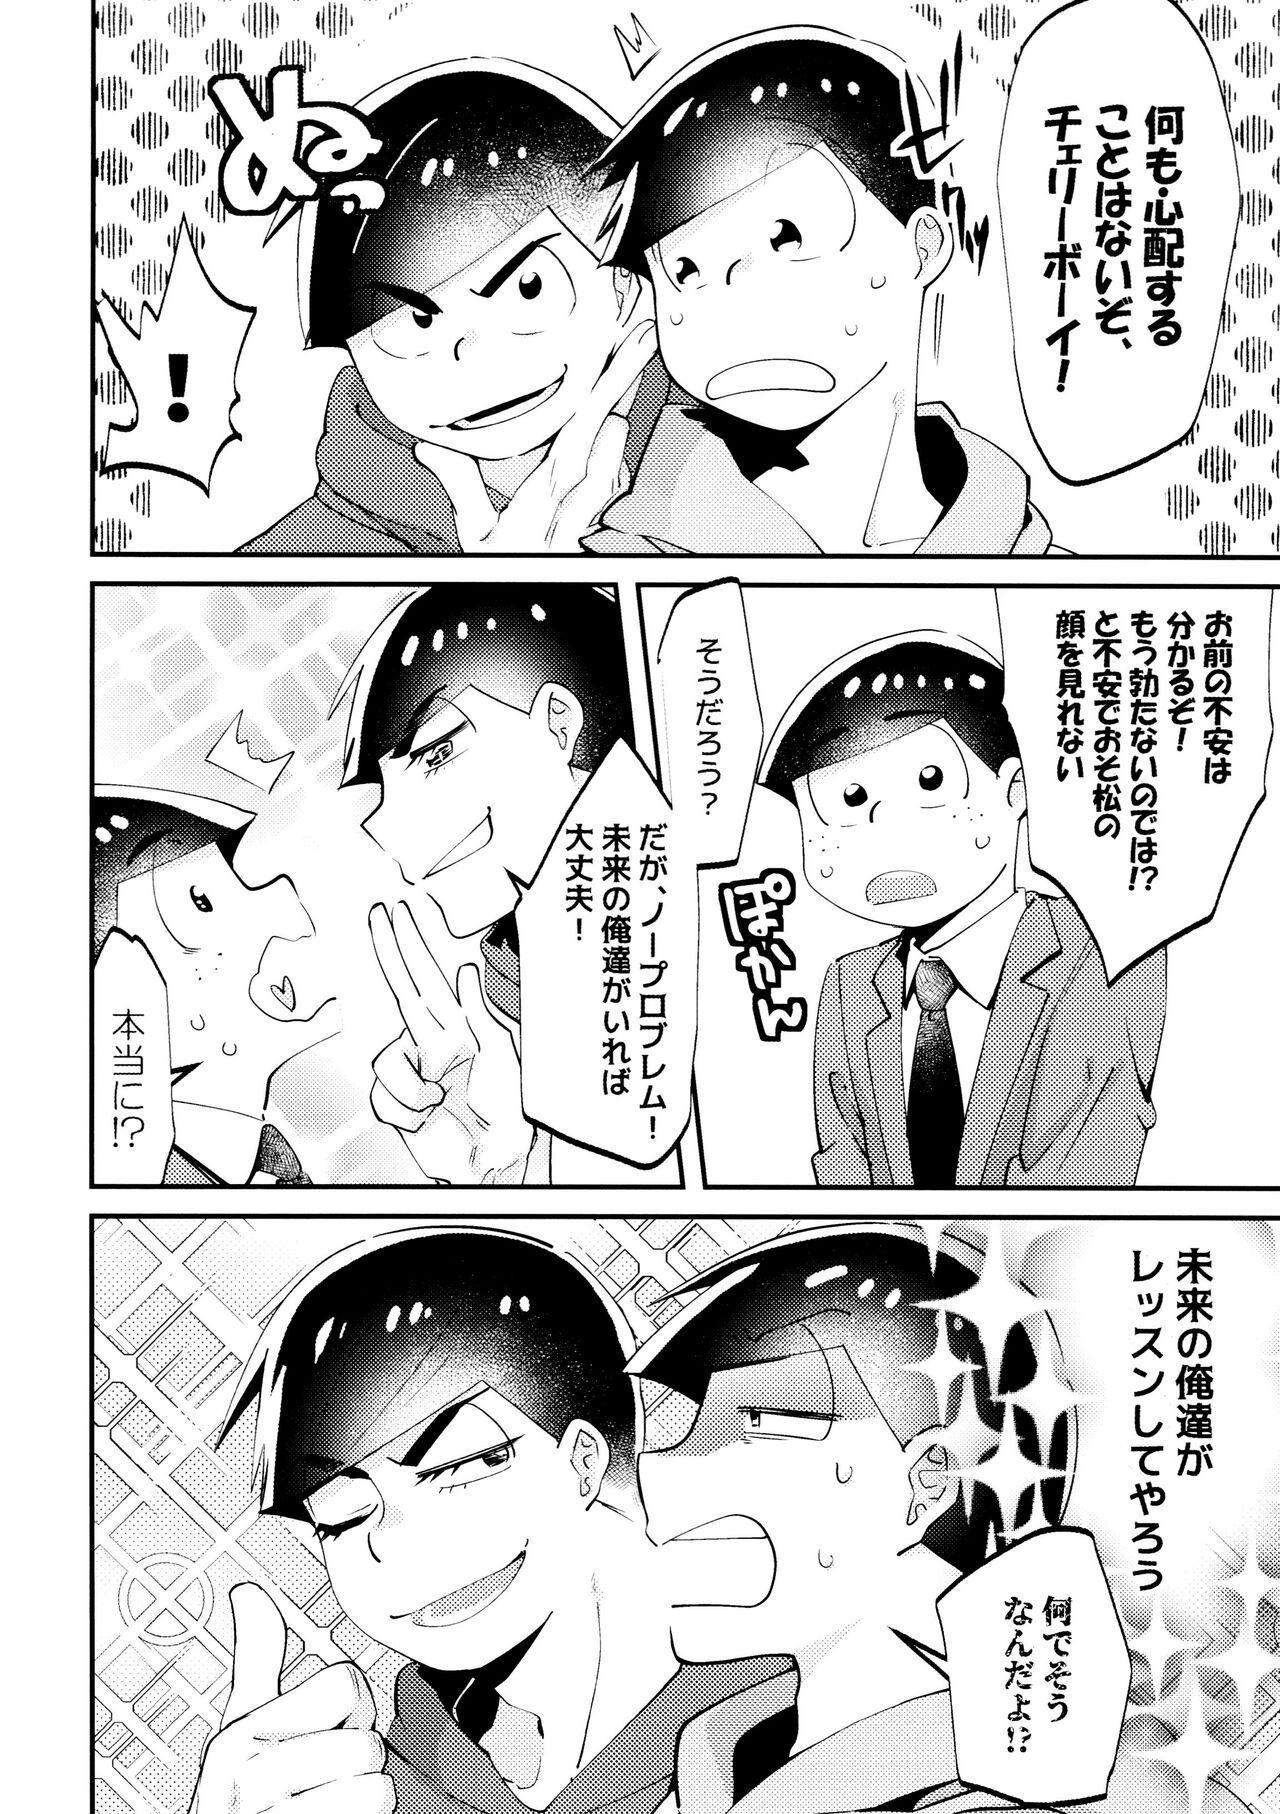 Mallu Cherry boy END - Osomatsu-san Cdmx - Page 7